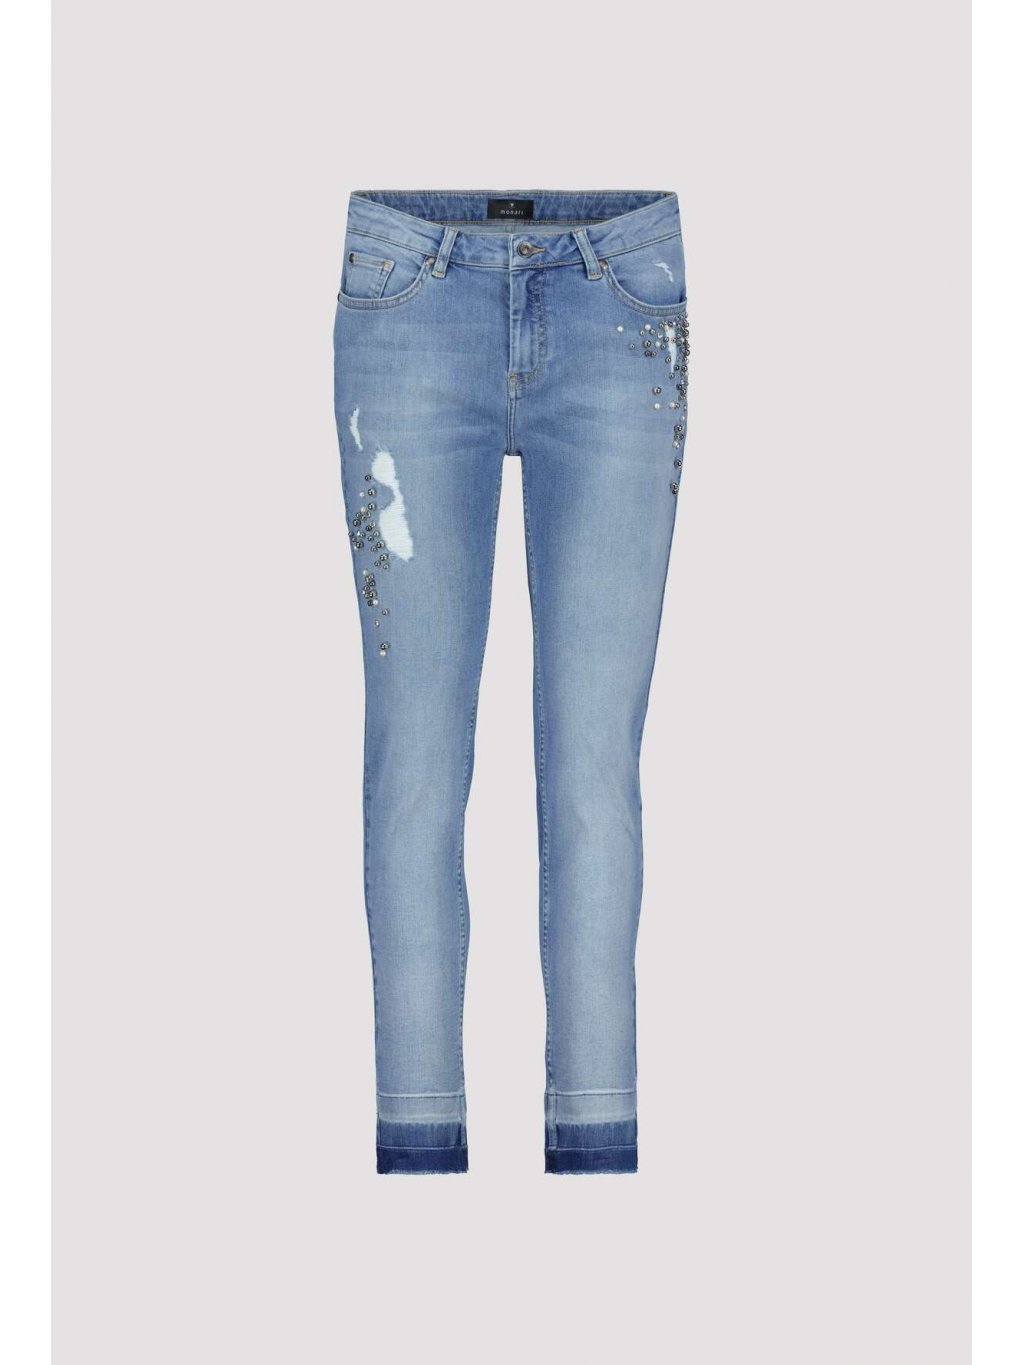 Kalhoty Monari 6418 světle modré džíny s aplikacemi